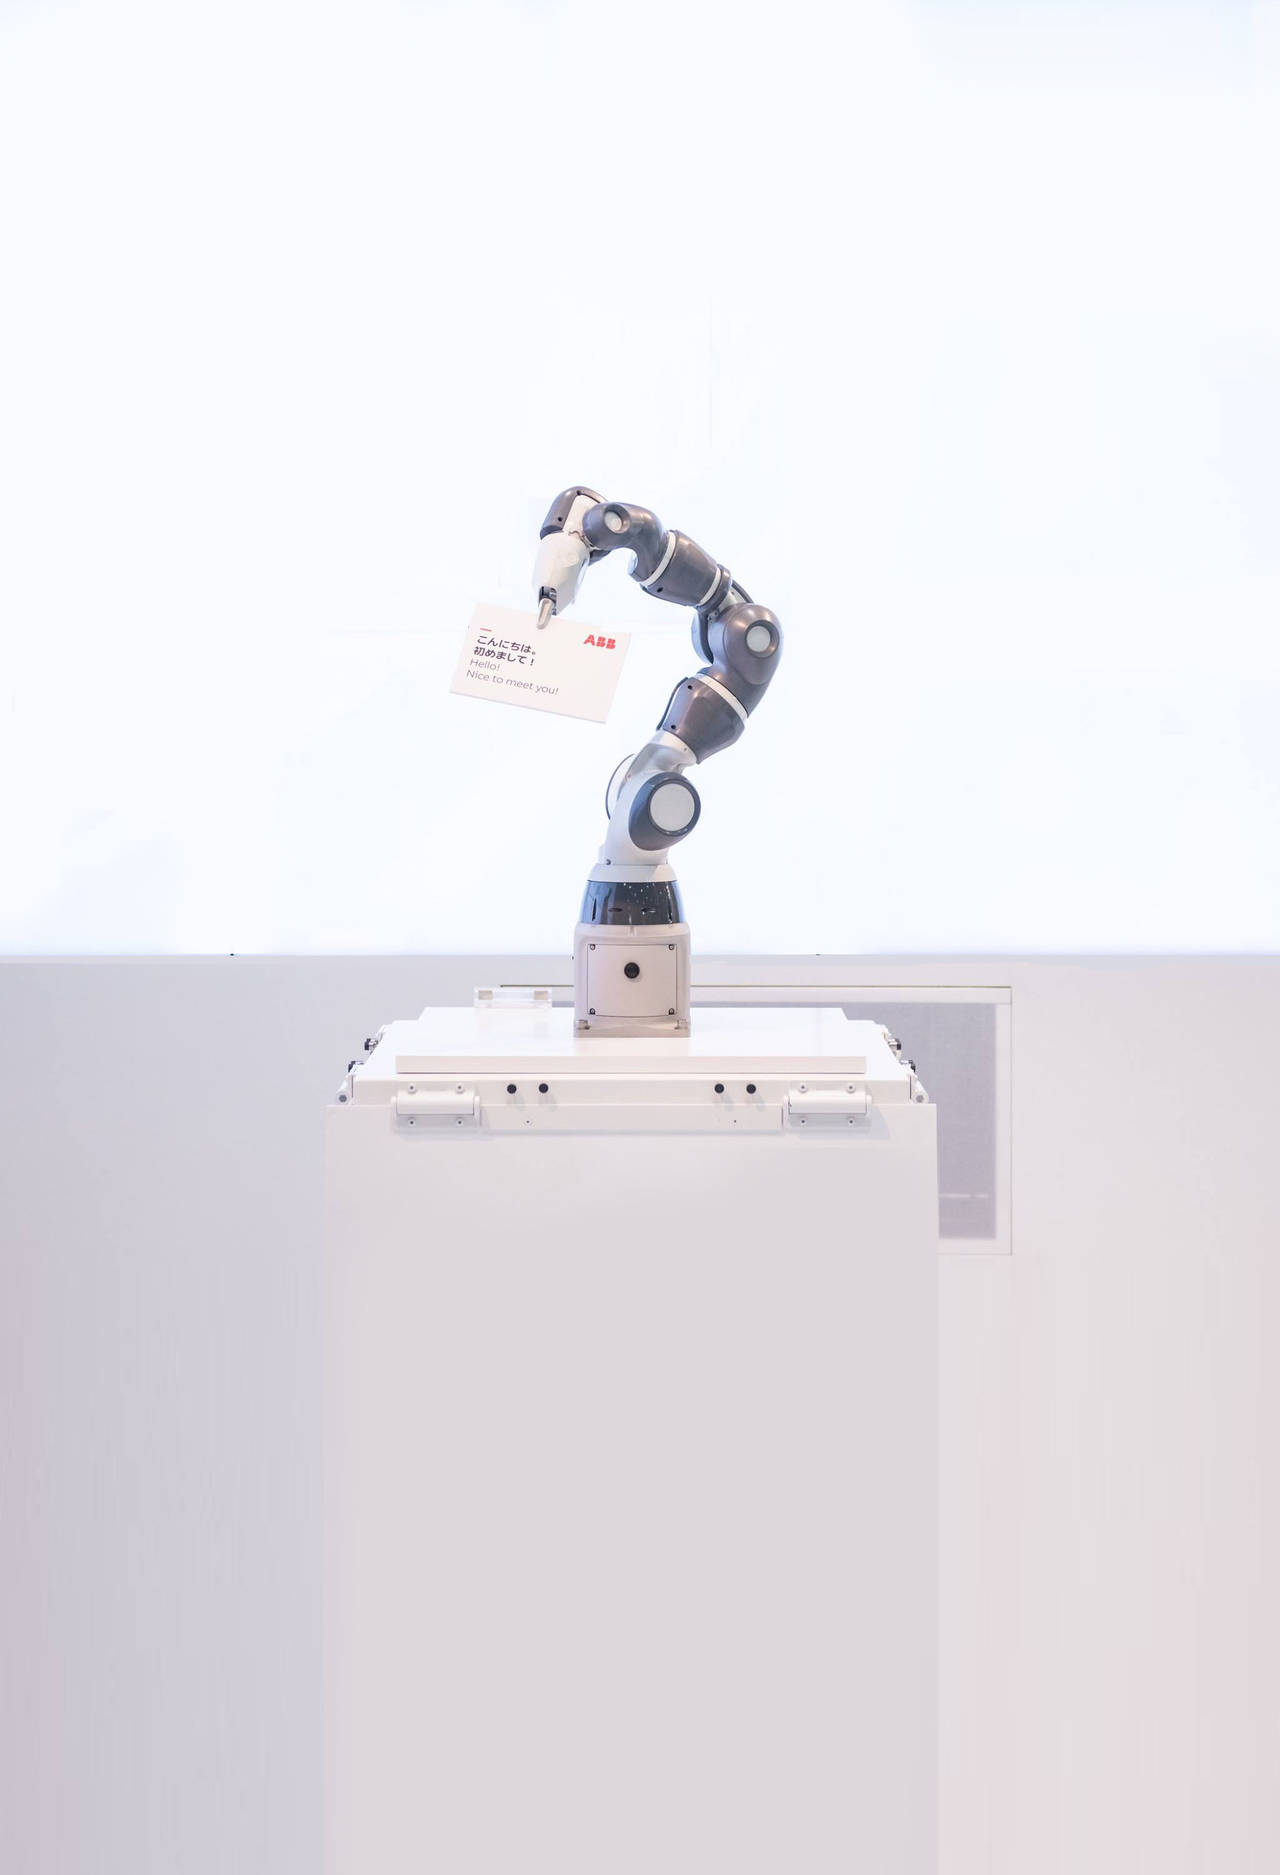 El robot industrial de la empresa ABB ocupa menos espacio será presentado en Tokio. (ARCHIVO)